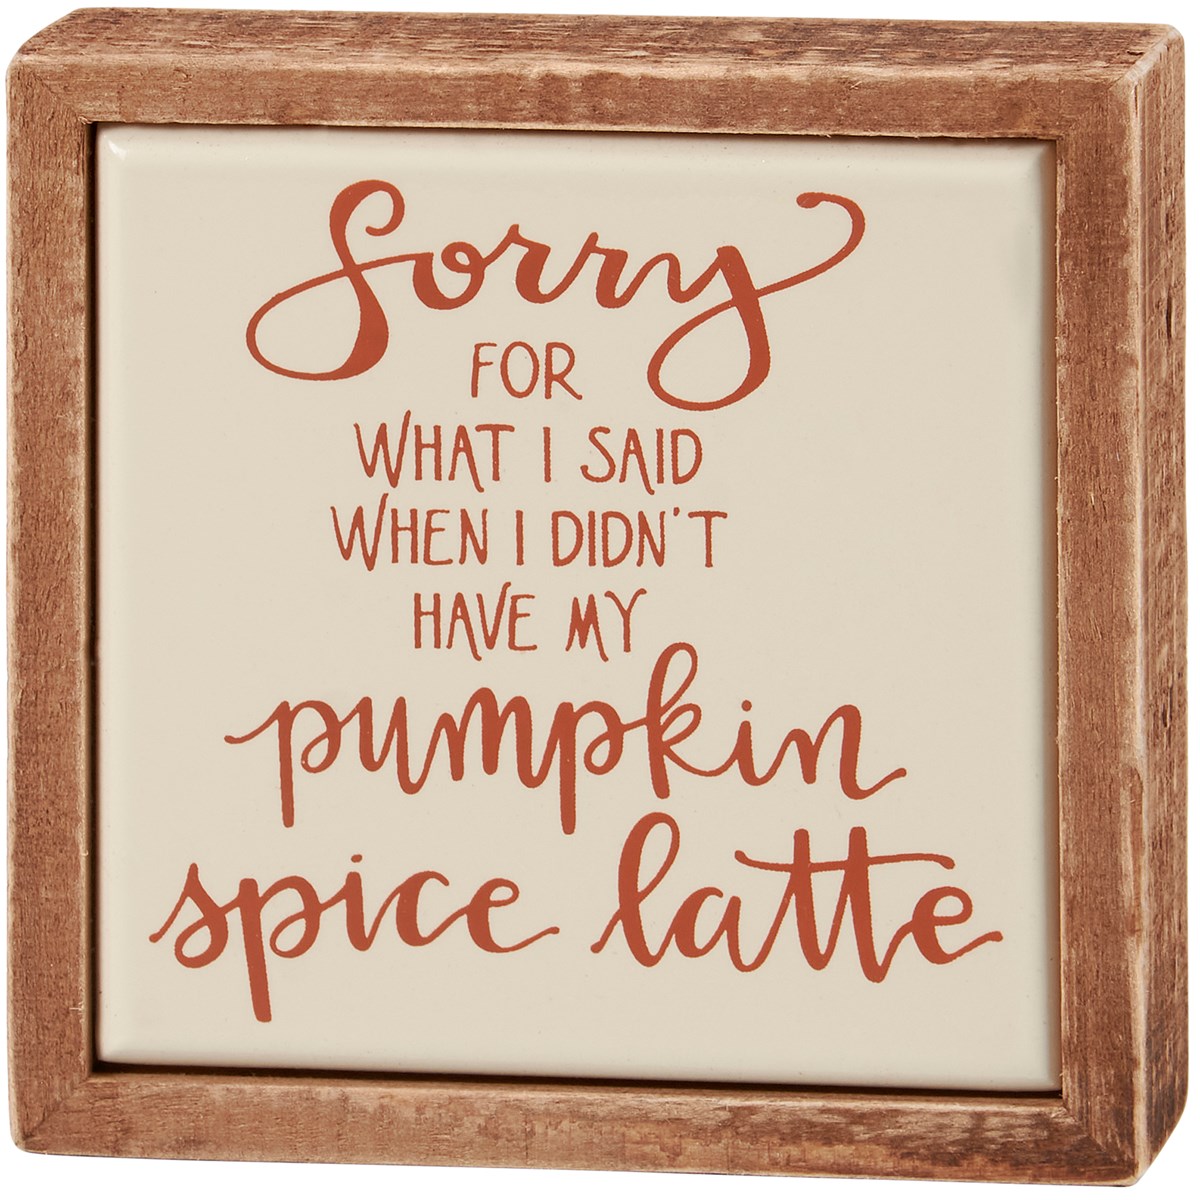 Pumpkin Spice Latte Box Sign Mini - Wood